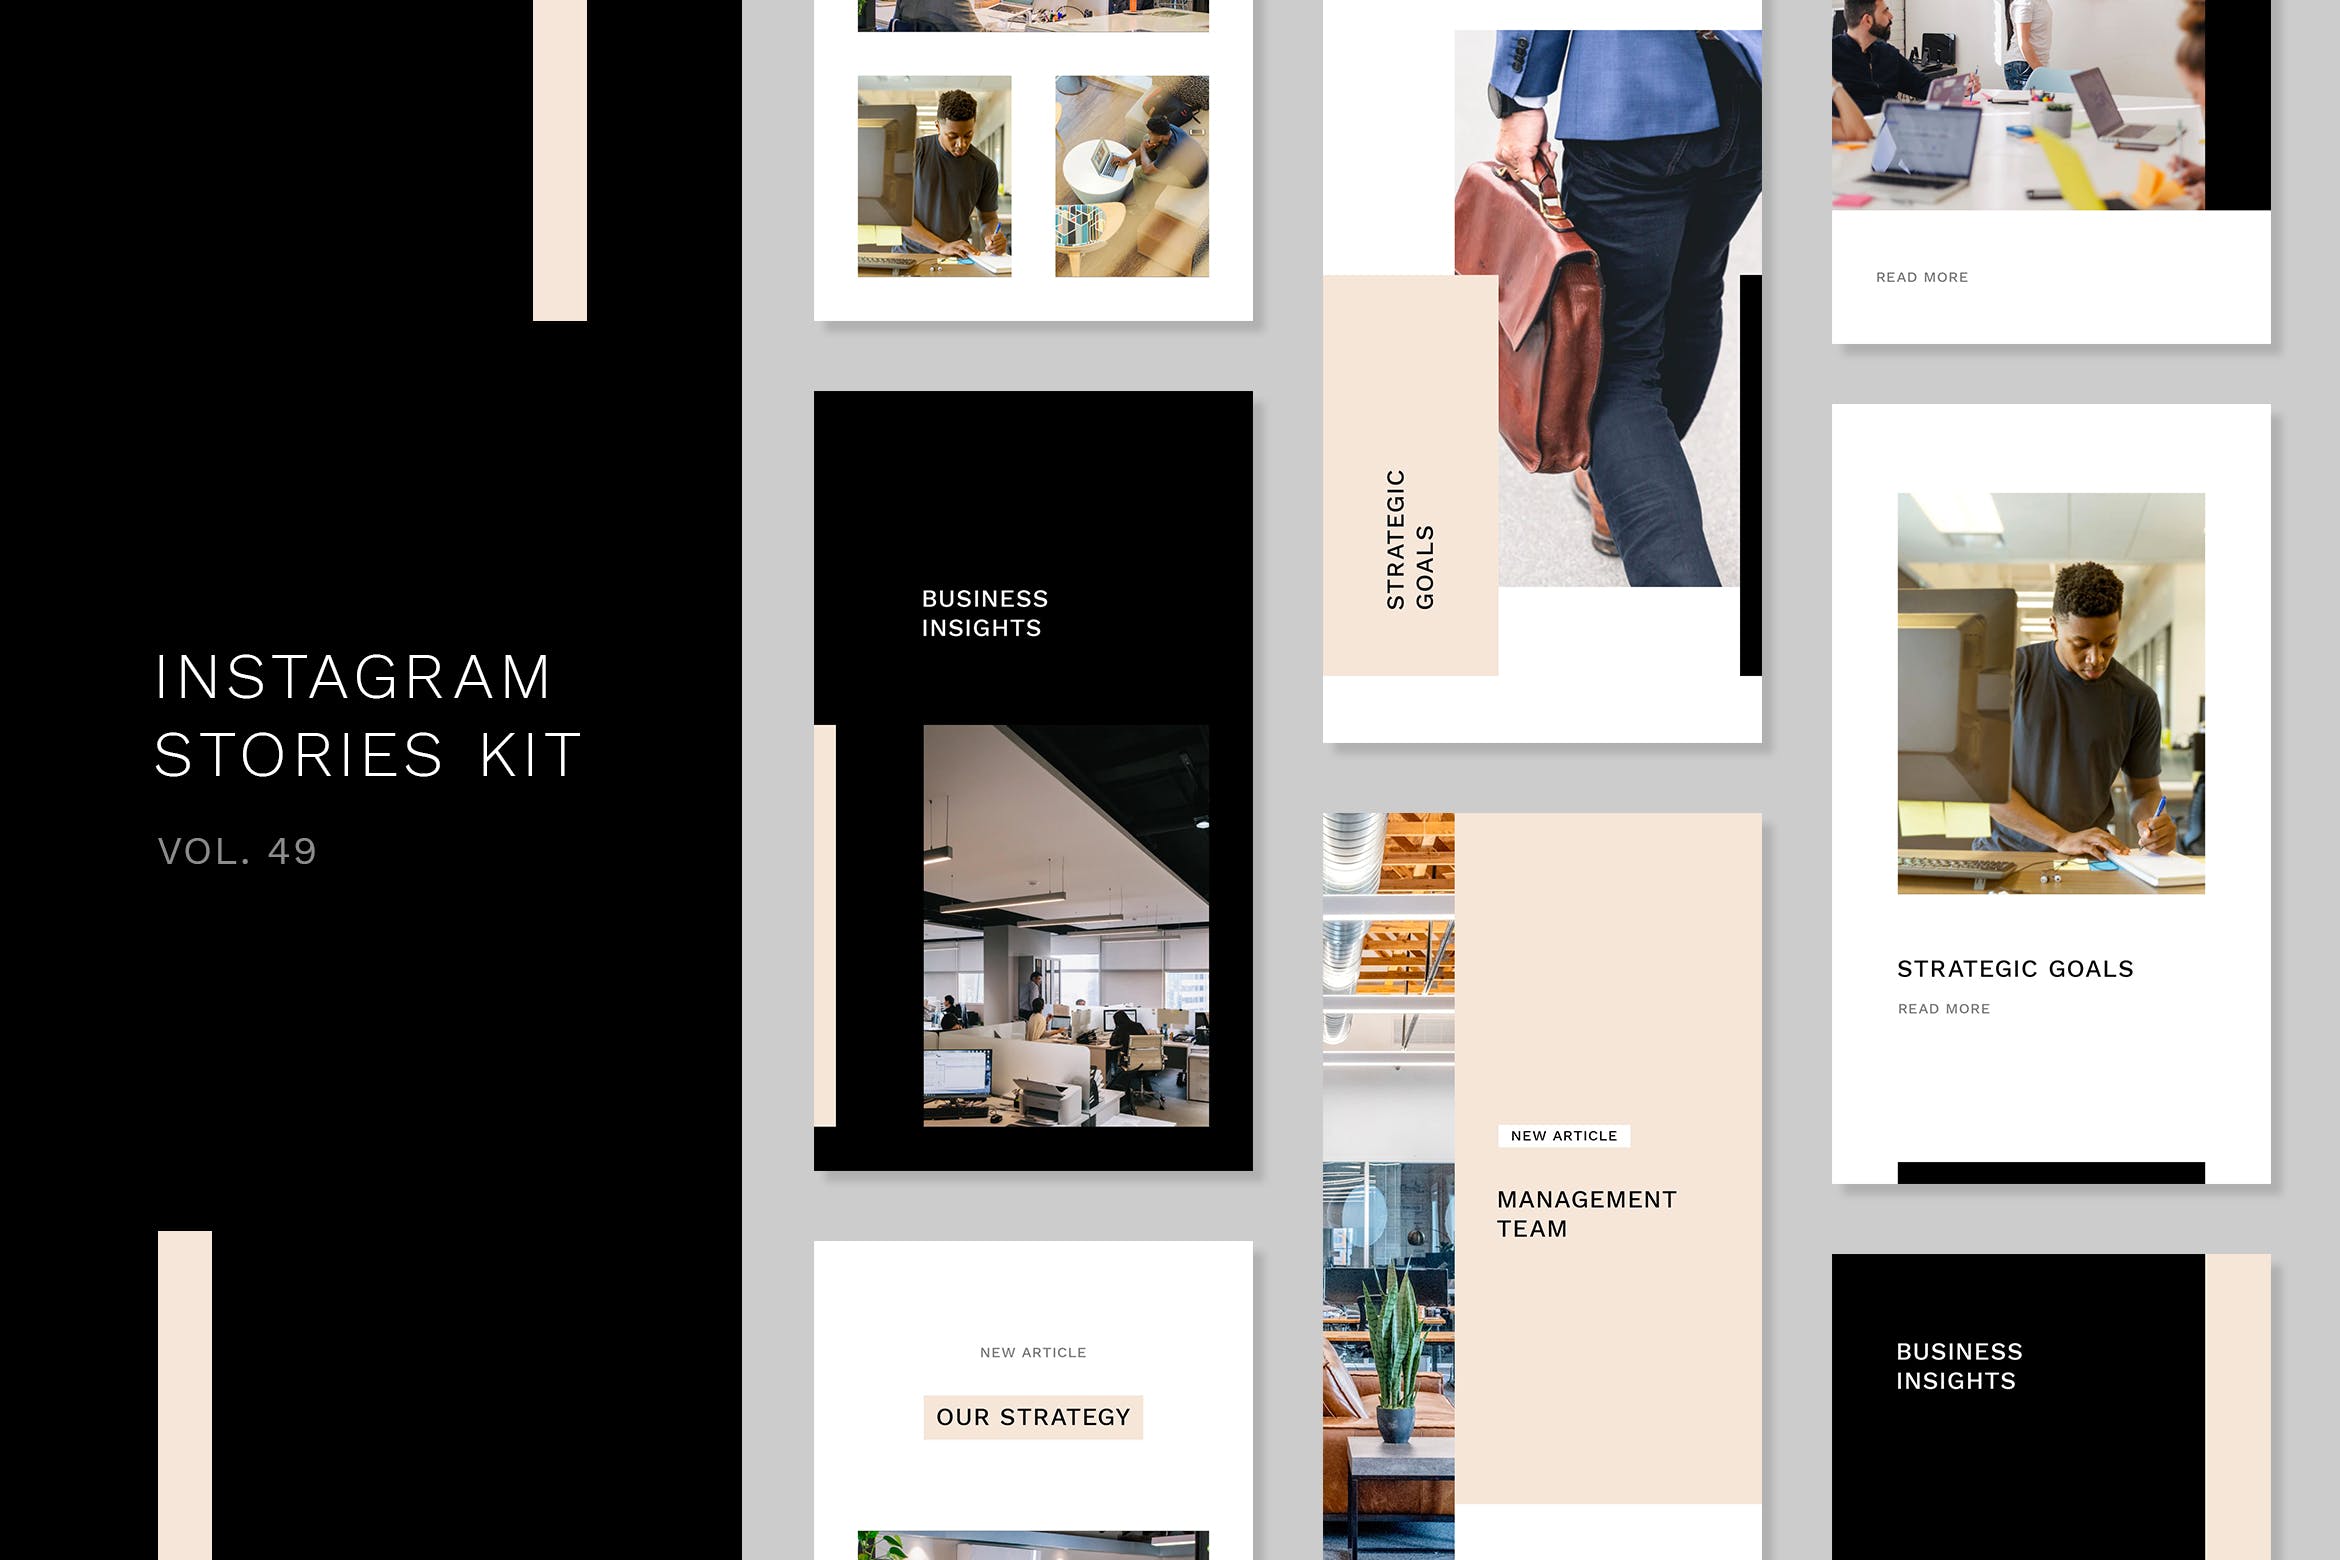 企业品牌故事营销Instagram设计素材包v49 Instagram Stories Kit (Vol.49)插图